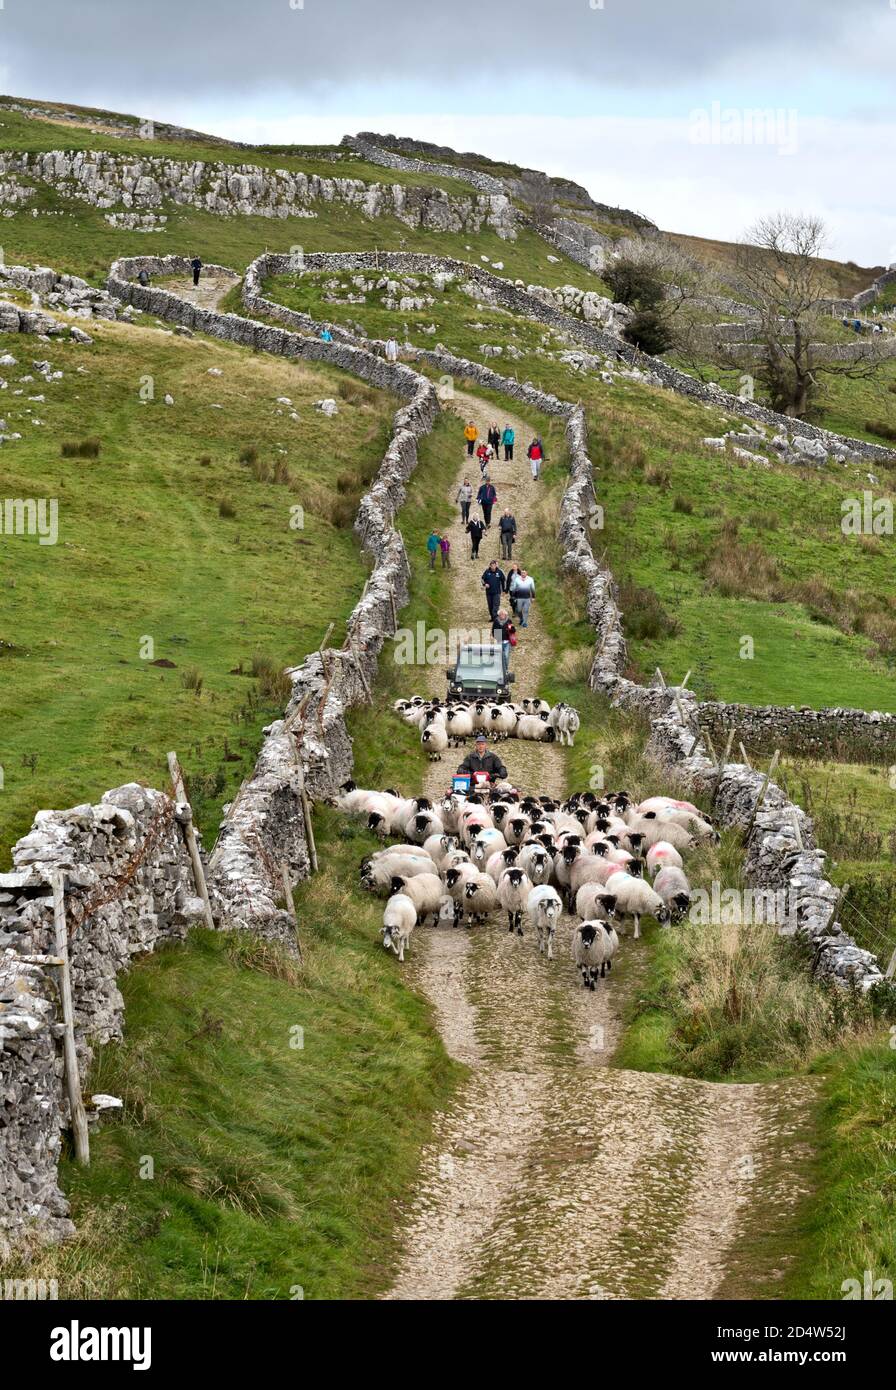 Horton-in-Ribblesdale, Yorkshire, Royaume-Uni. 11 octobre 2020. Travailler et jouer dans la campagne britannique au milieu de la pandémie de Covid-19. Un fermier emmène ses moutons au large des cloches de Pen-y-ghent tandis que les marcheurs peuvent profiter du temps ensoleillé du week-end pour marcher sur le célèbre sentier des trois pics. La route fait également partie de la Pennine Way. Horton-in-Ribblesdale, Parc national des Dales du Yorkshire: Crédit: John Bentley/Alamy Live News Banque D'Images